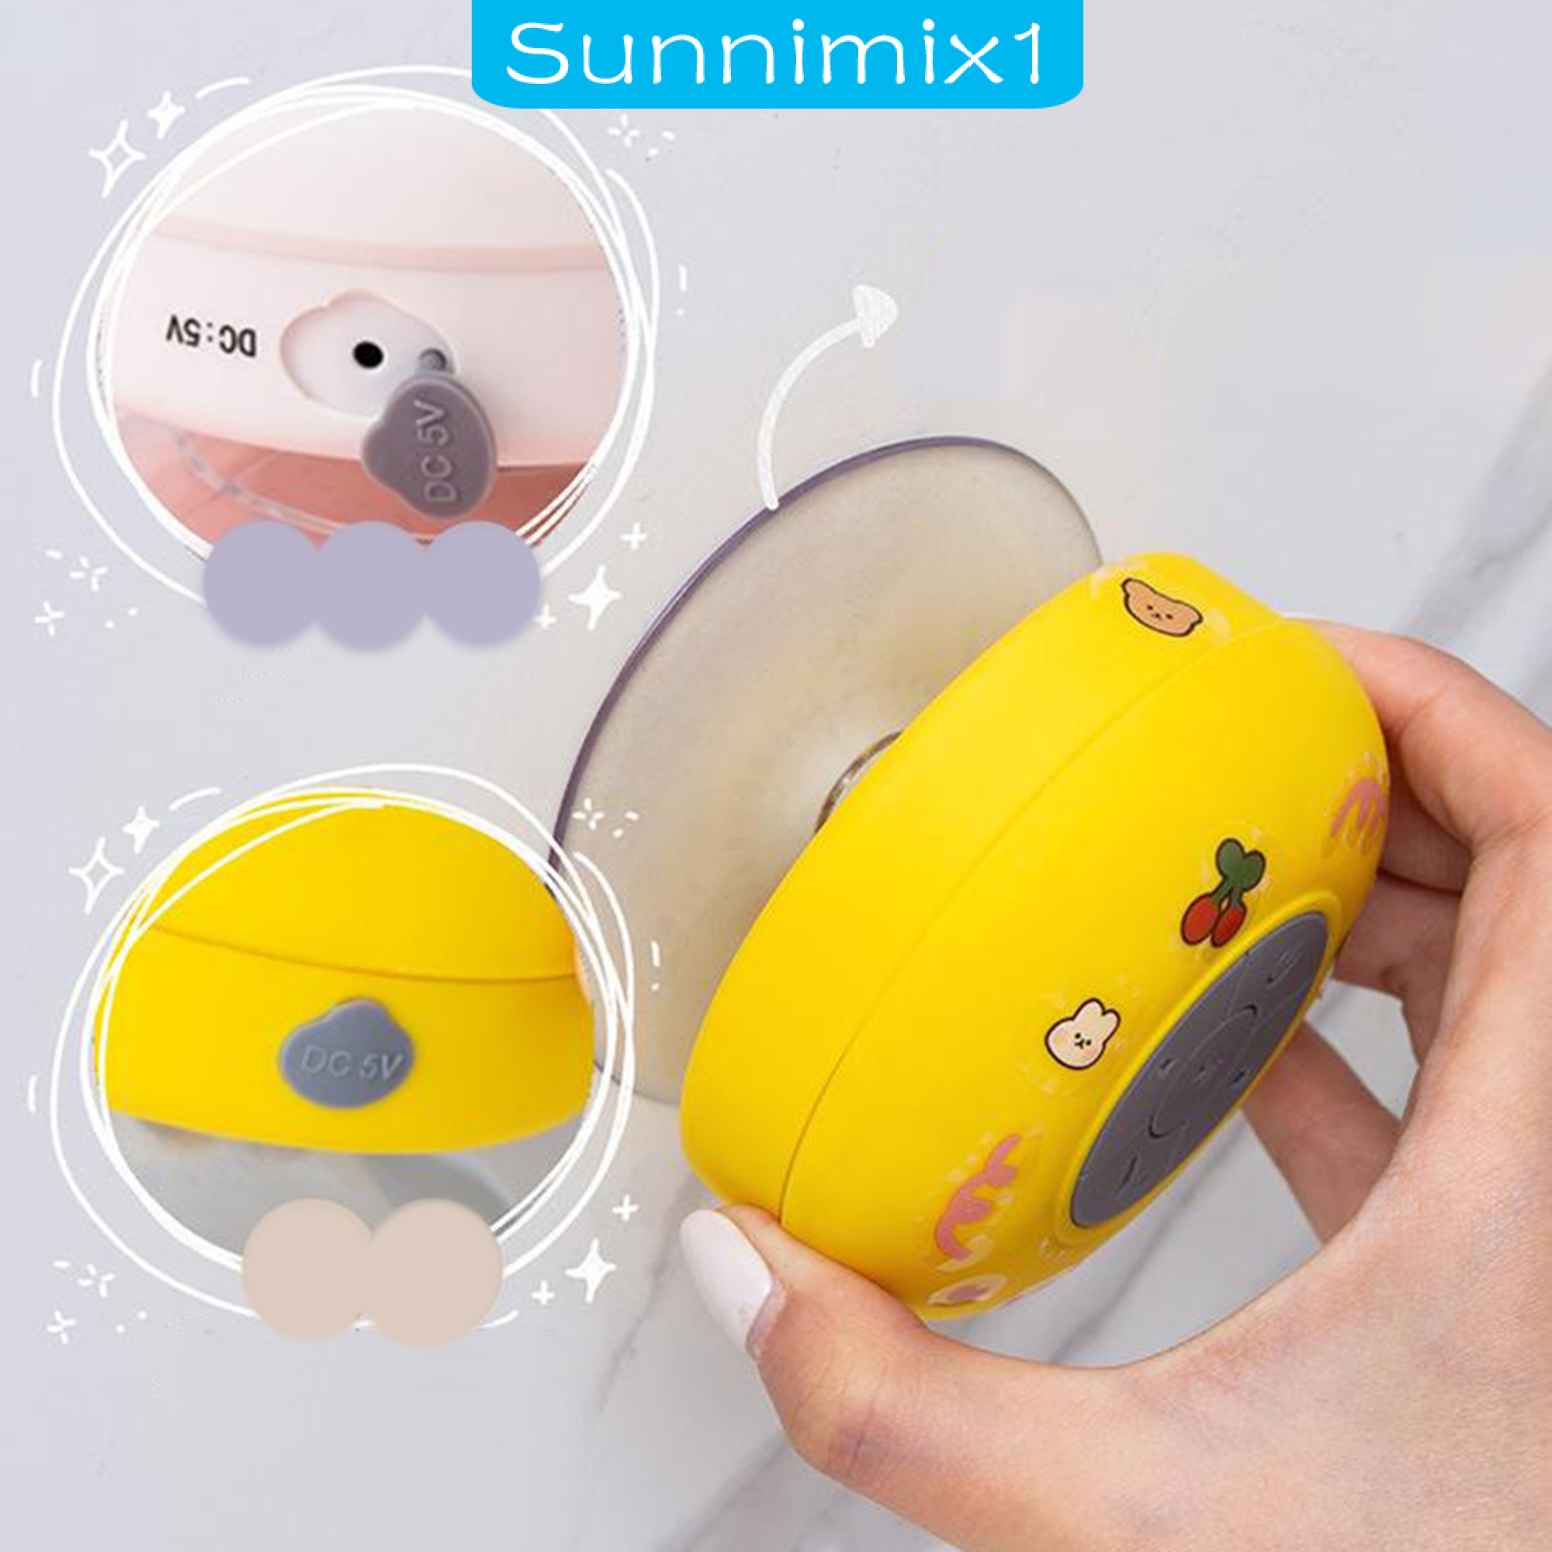 [SUNNIMIX1] Loa bluetooth mini di động, chống nước, loa không dây có hút, thích hợp cho phòng tắm, bể bơi, nhà bếp, phòng khách và ngoài trời.